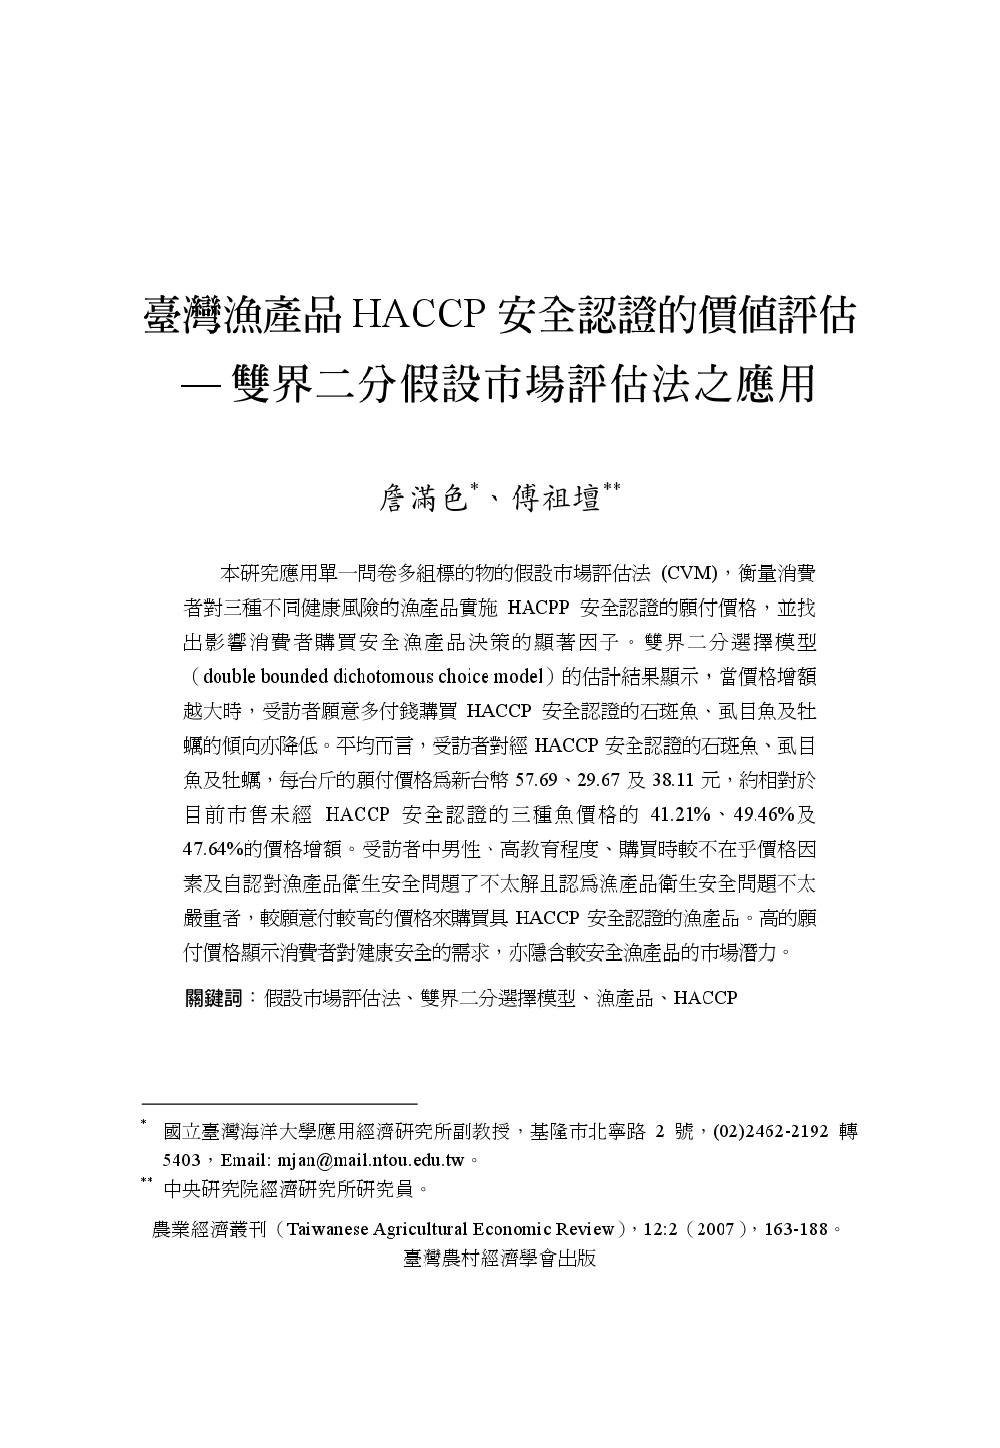 臺灣漁產品HACCP安全認證的價值評估___雙界二分假設市場評估法之應用.jpg